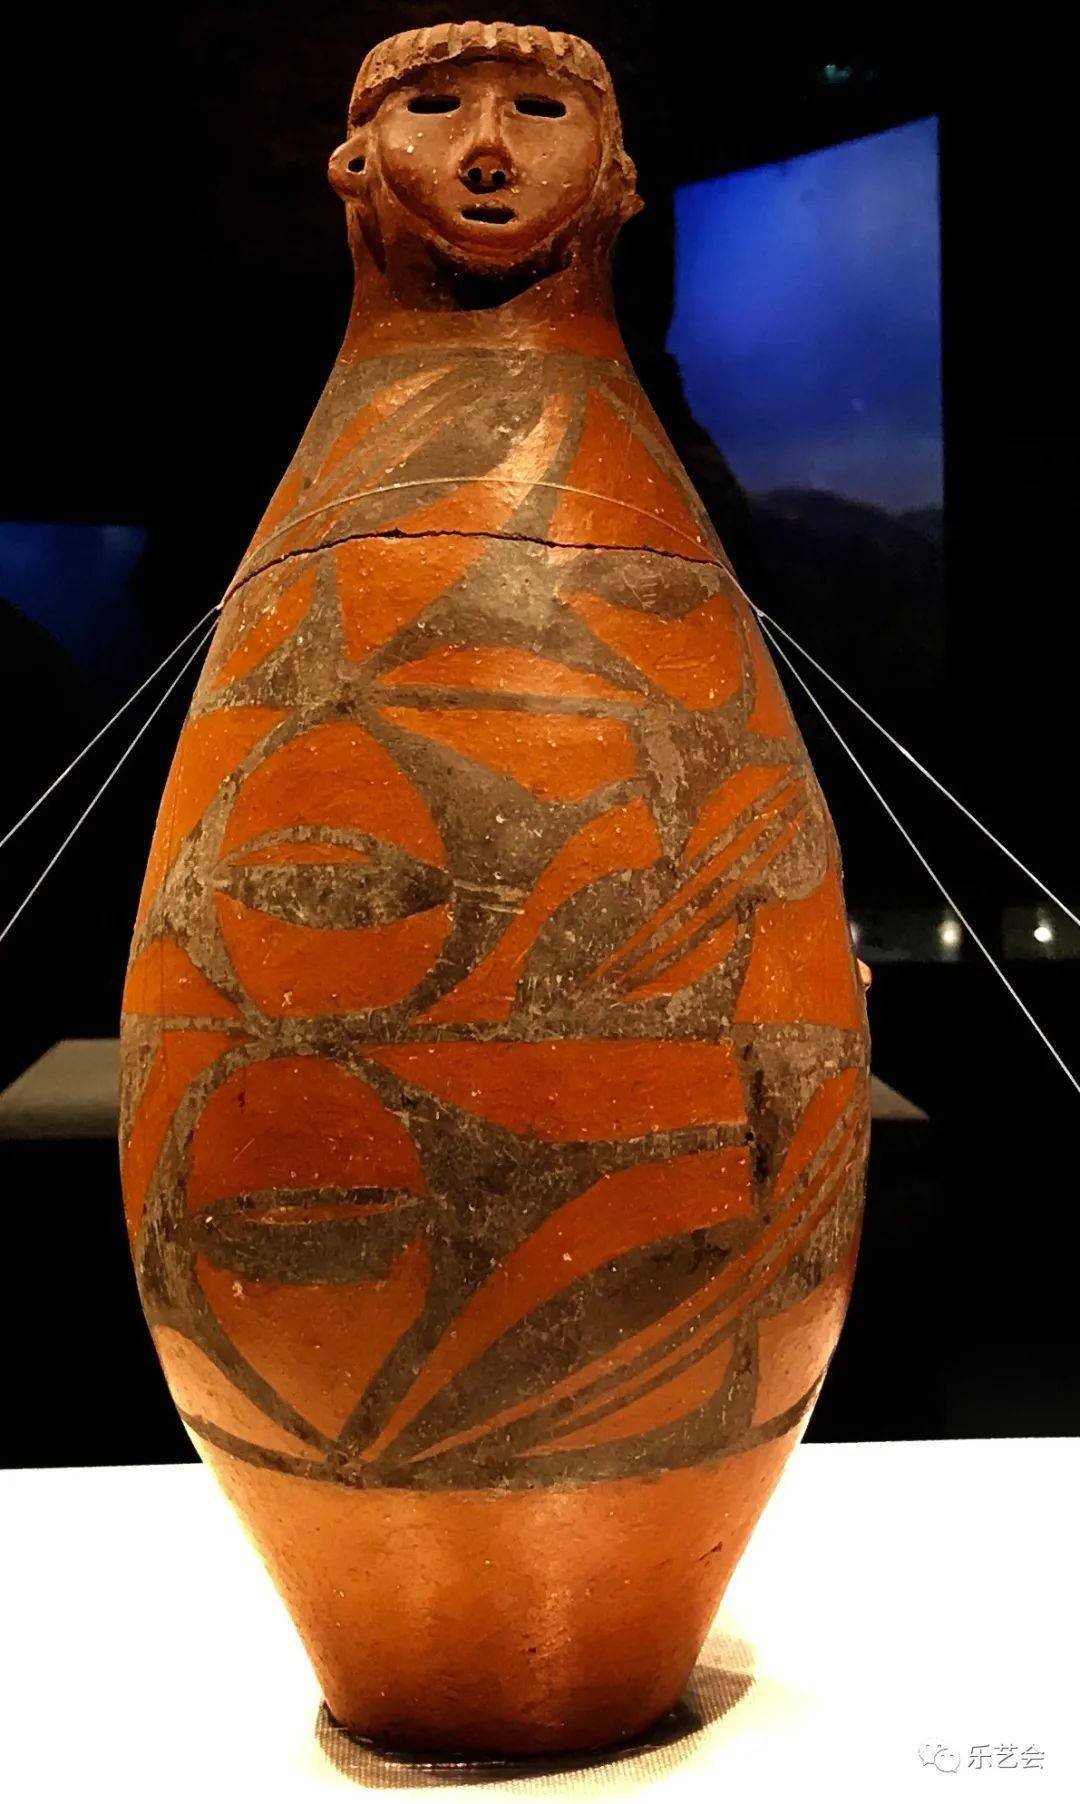 人头形器口彩陶瓶是葫芦形彩陶瓶,是甘肃省博物馆镇馆之宝.